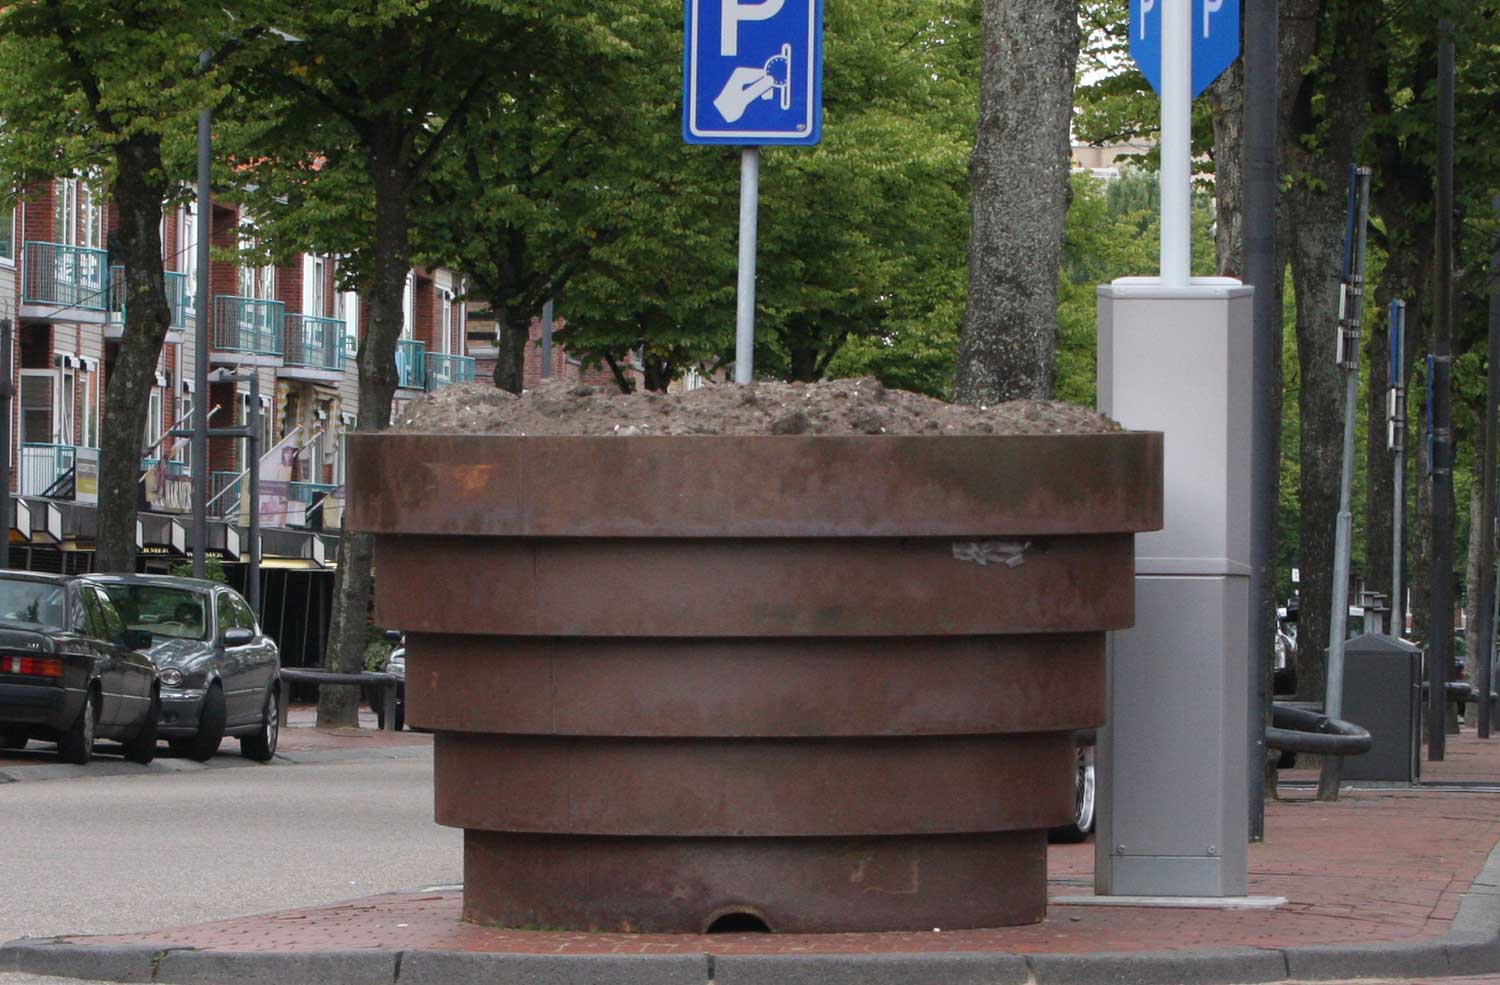 Verzwaarde bloembakken in centrum Rotterdam tegen aanslagen